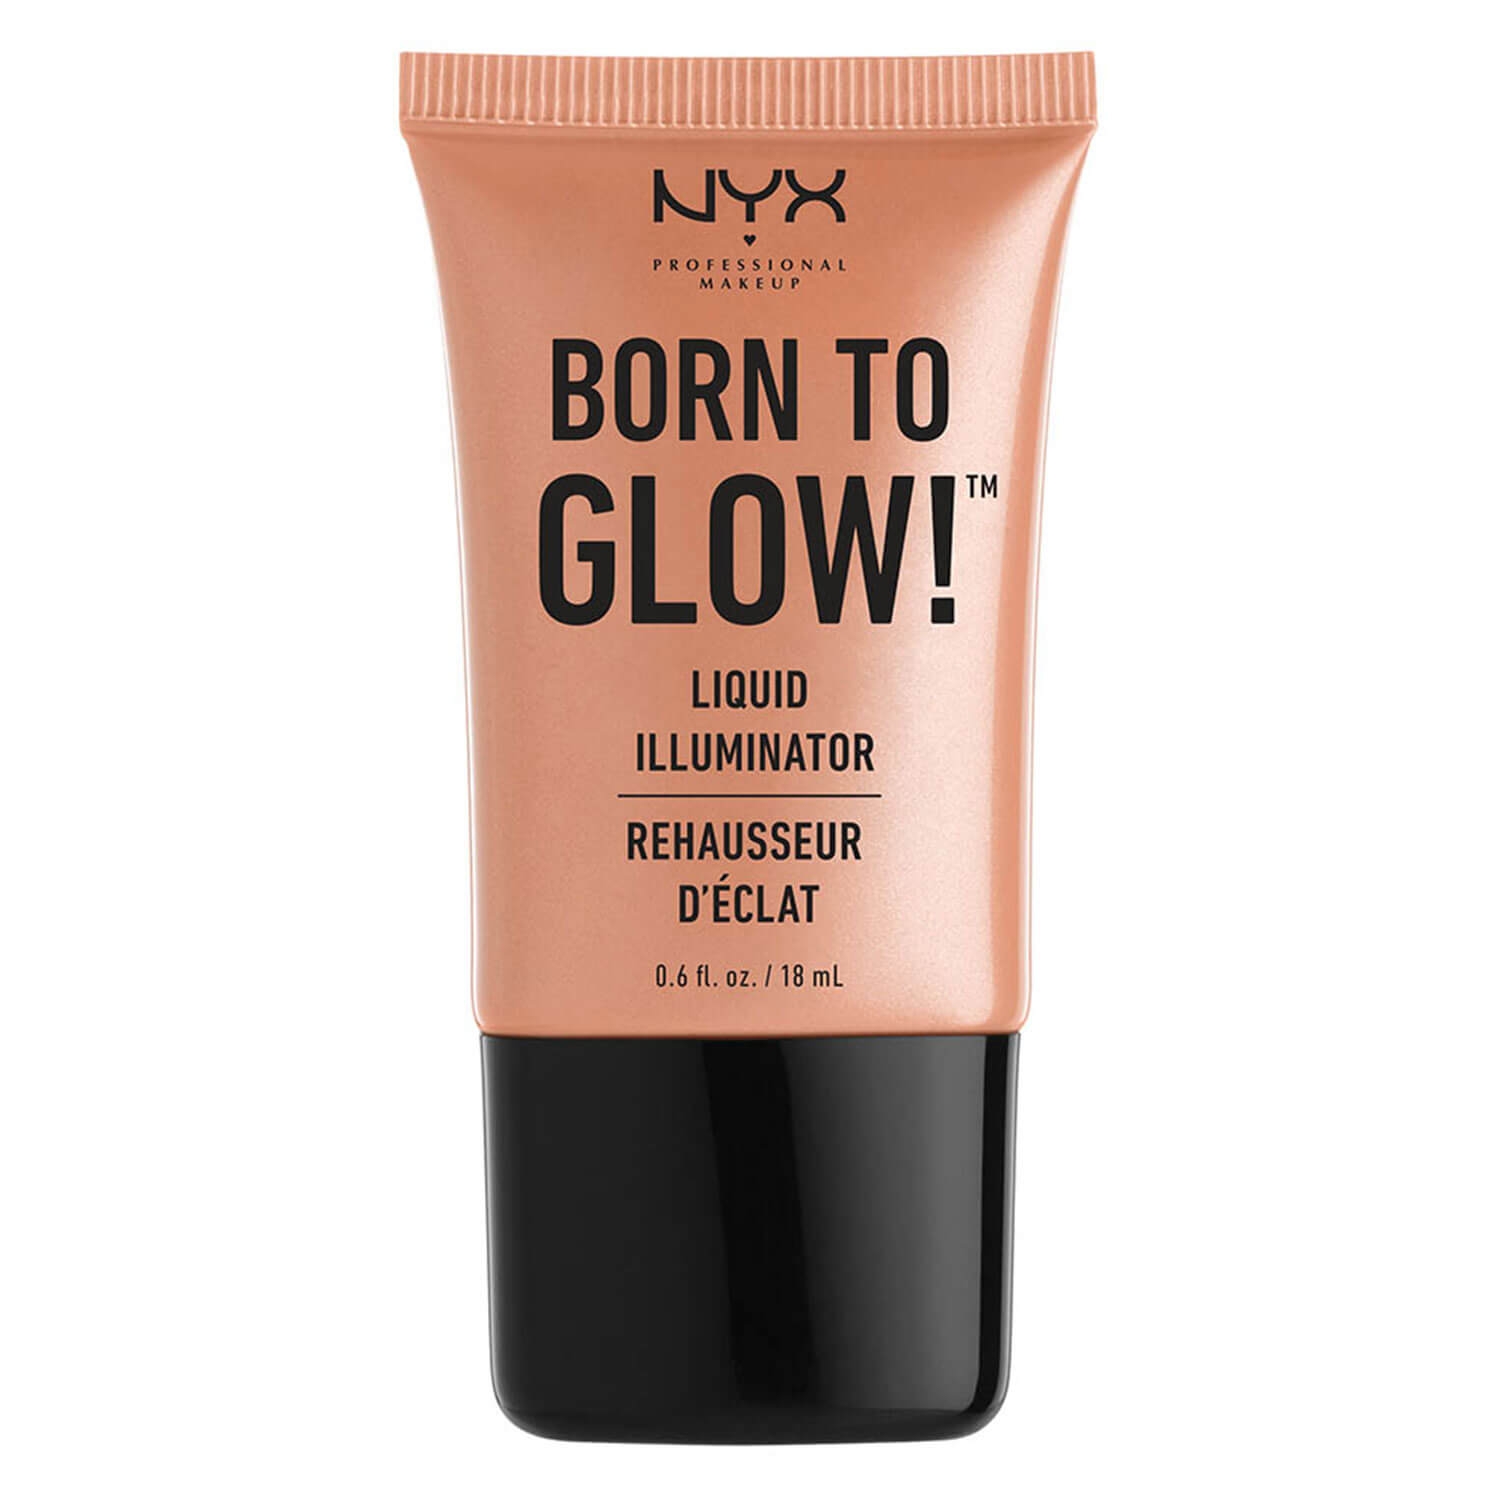 Produktbild von Born to Glow - Liquid Illuminator Gleam